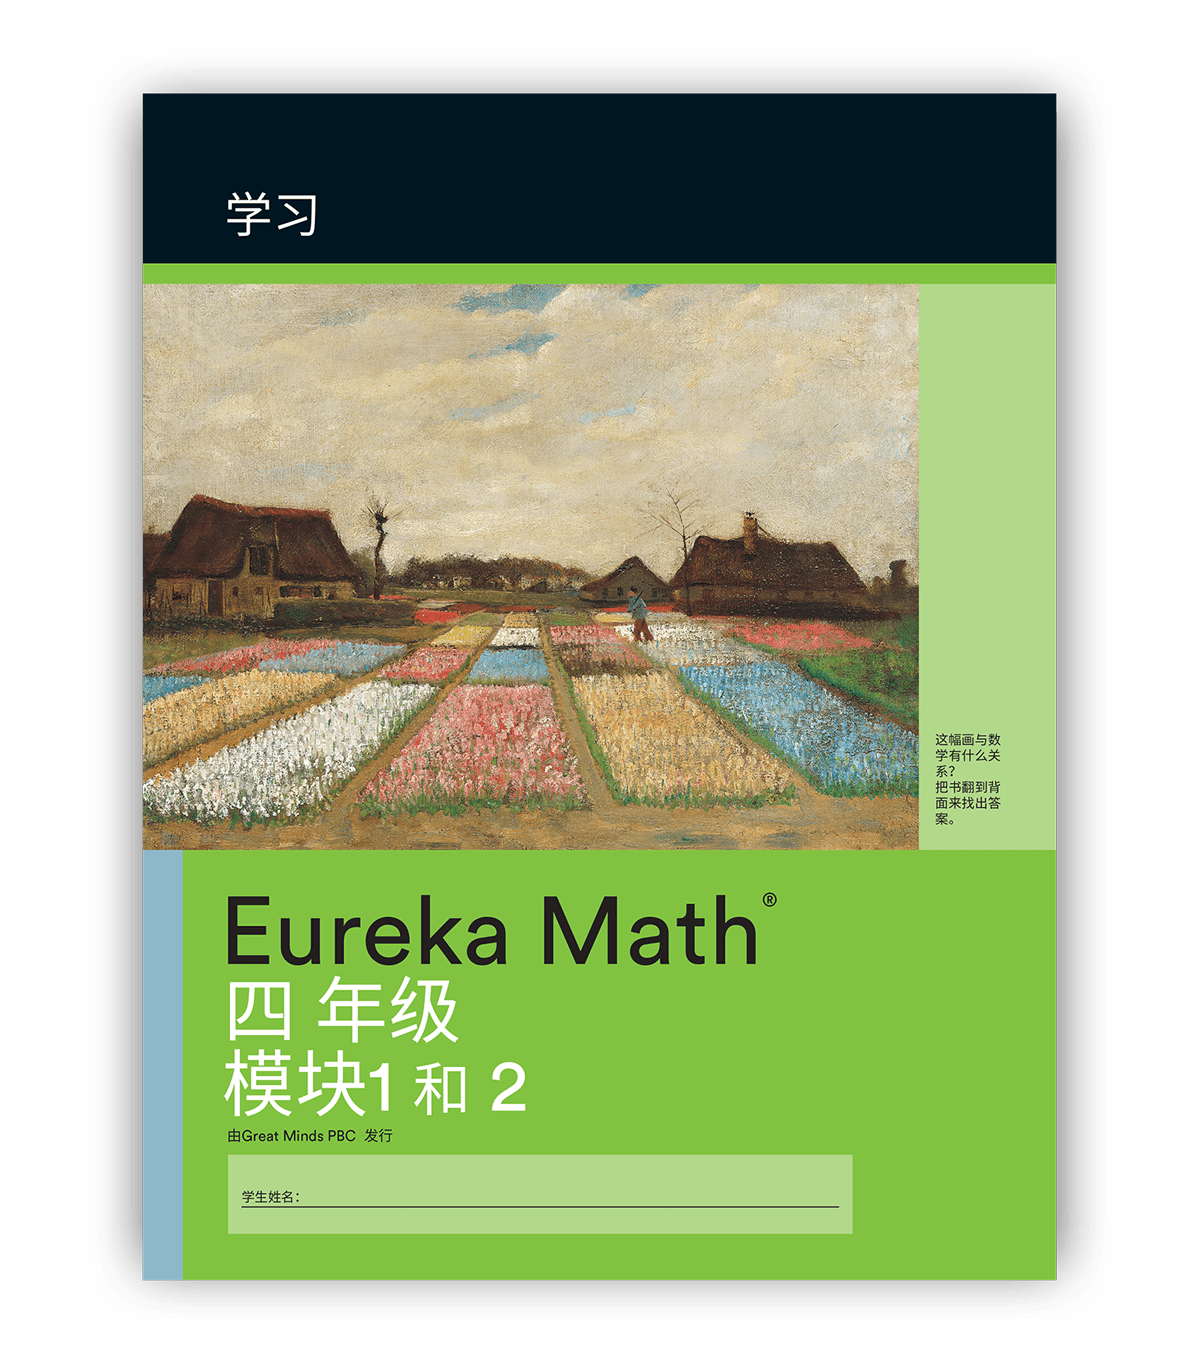 printed-materials-eureka-math-engageny-math